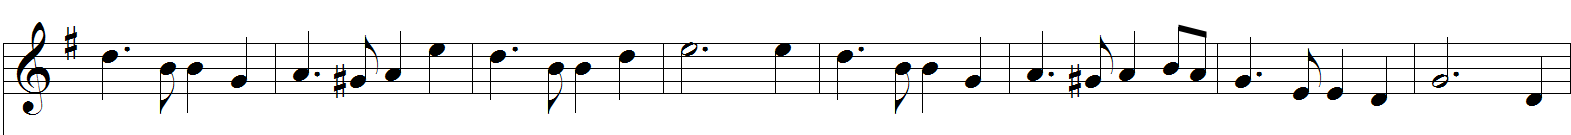 Abbildung Notation